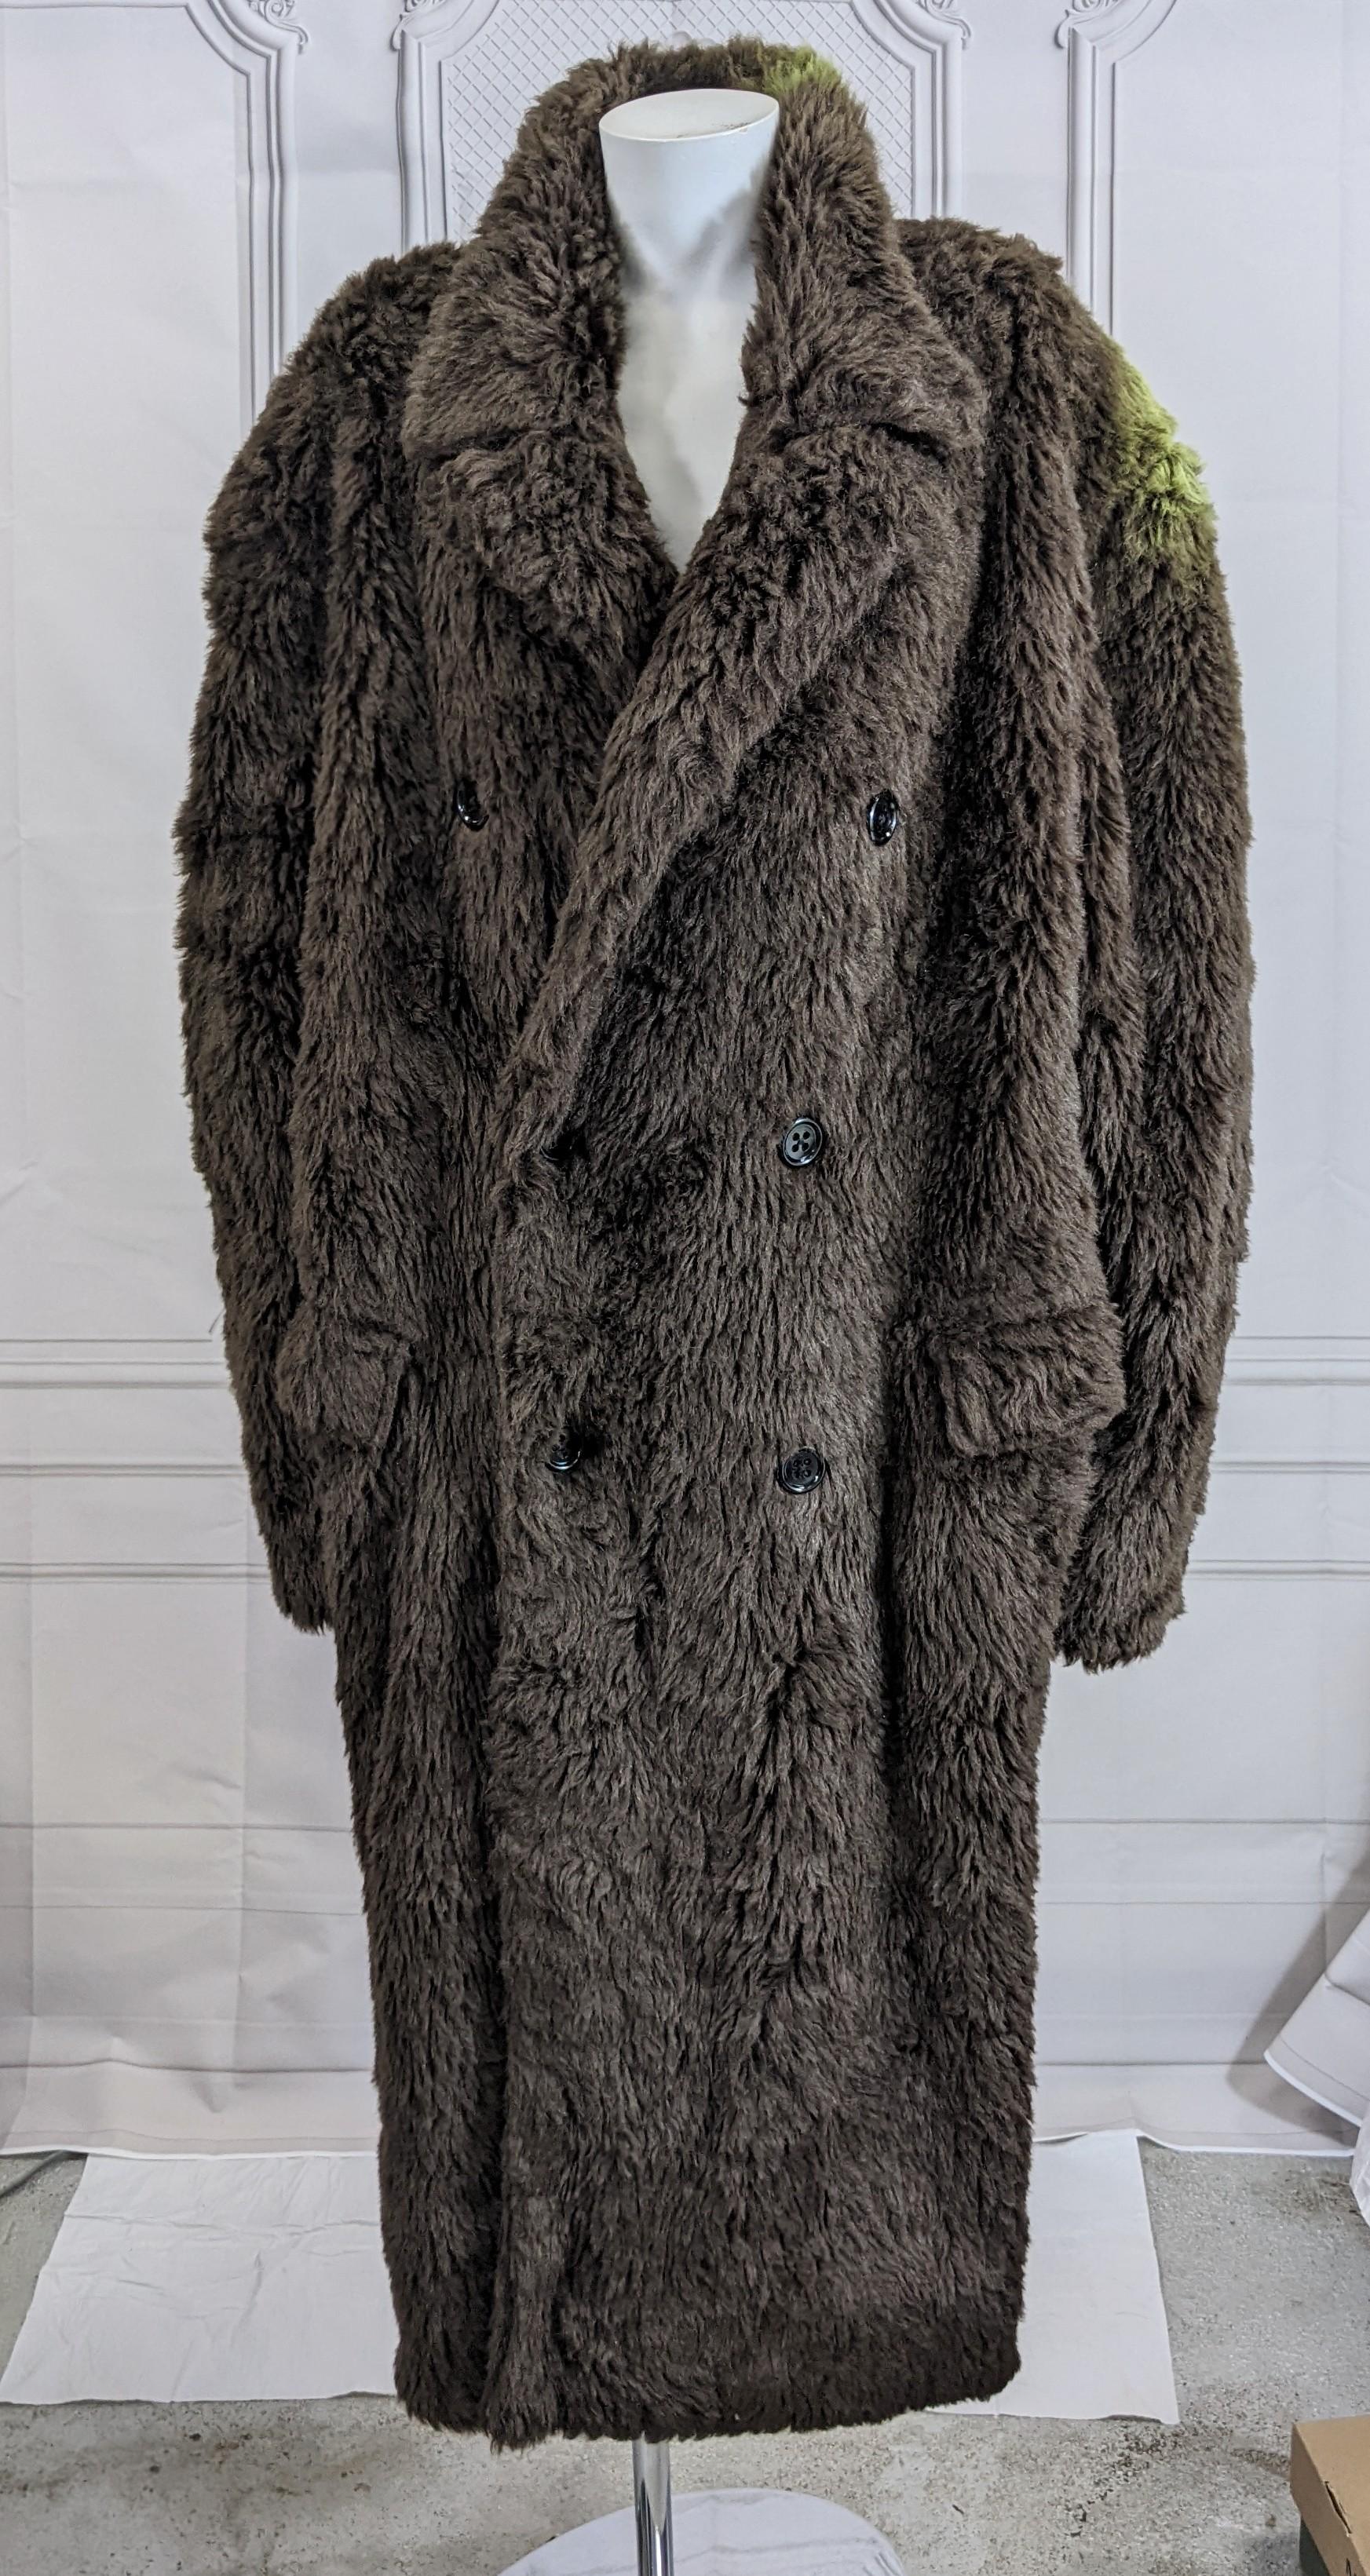 Yohji Yamamoto Mens Double Breasted Faux Fur Teddy Coat from the 1980's. Coupe en fausse fourrure pelucheuse dans un style masculin classique avec l'utilisation d'une fabrication inattendue. 
Sur l'épaule, il y a des traces de peinture en aérosol